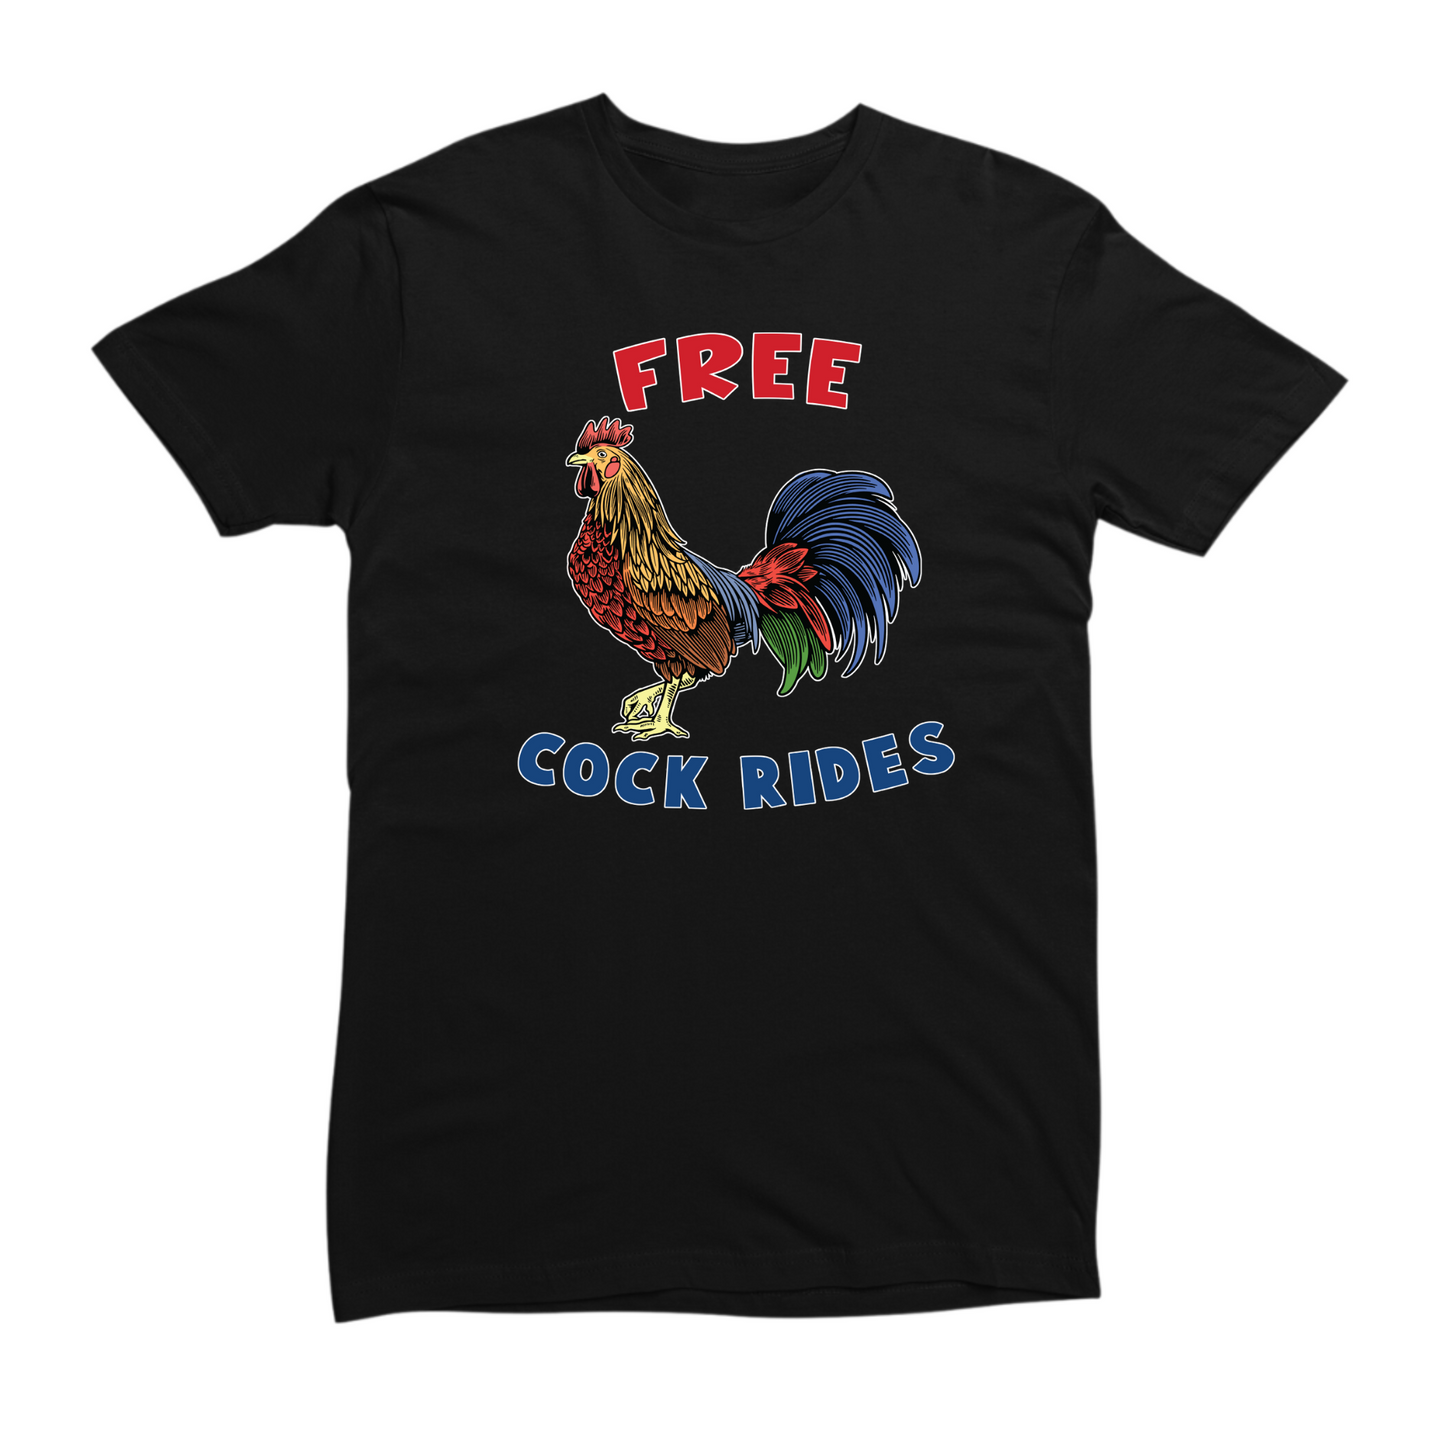 Free Cock Rides Tshirt